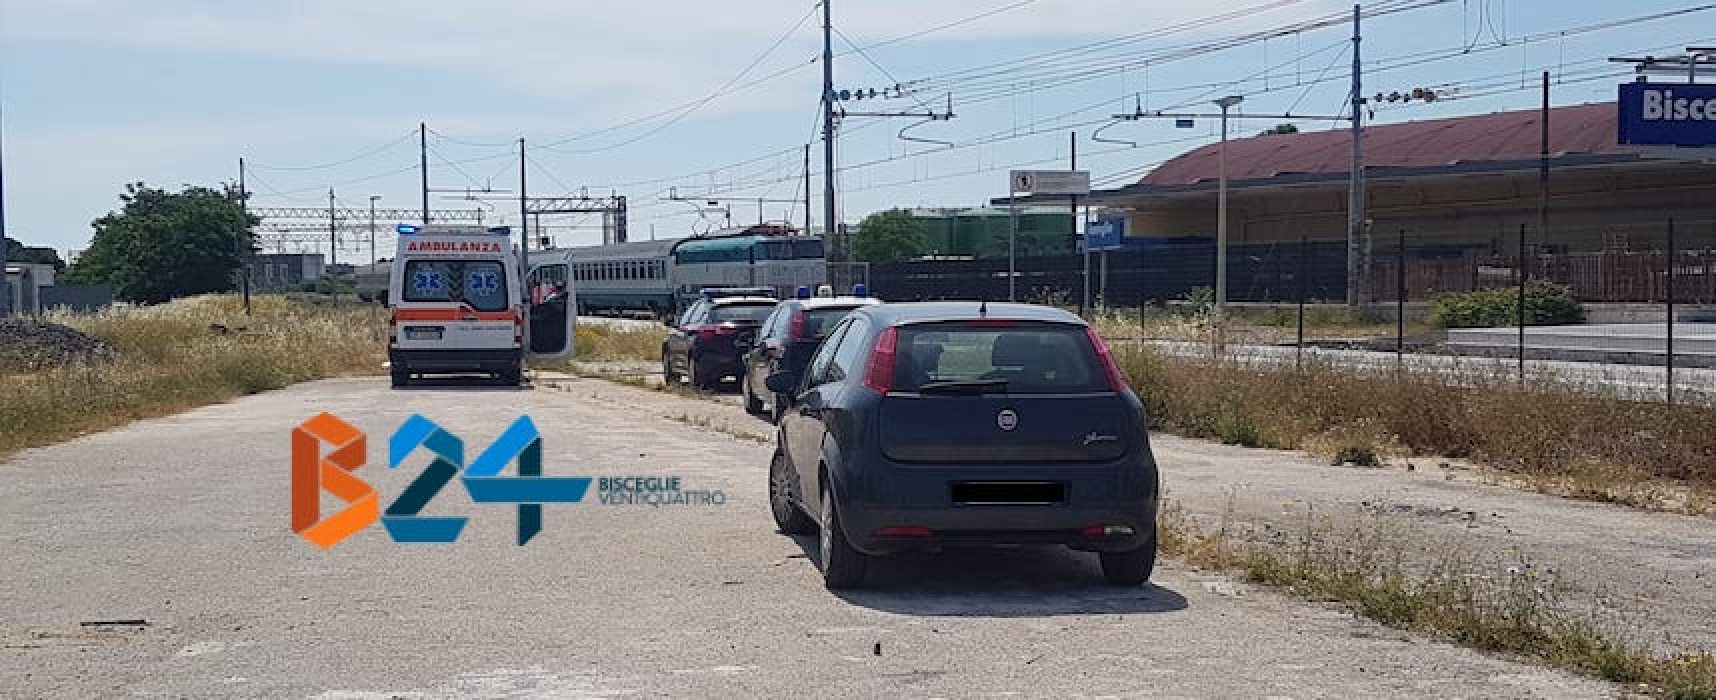 Linea ferroviaria Bari-Foggia bloccata, 66enne biscegliese investito sui binari